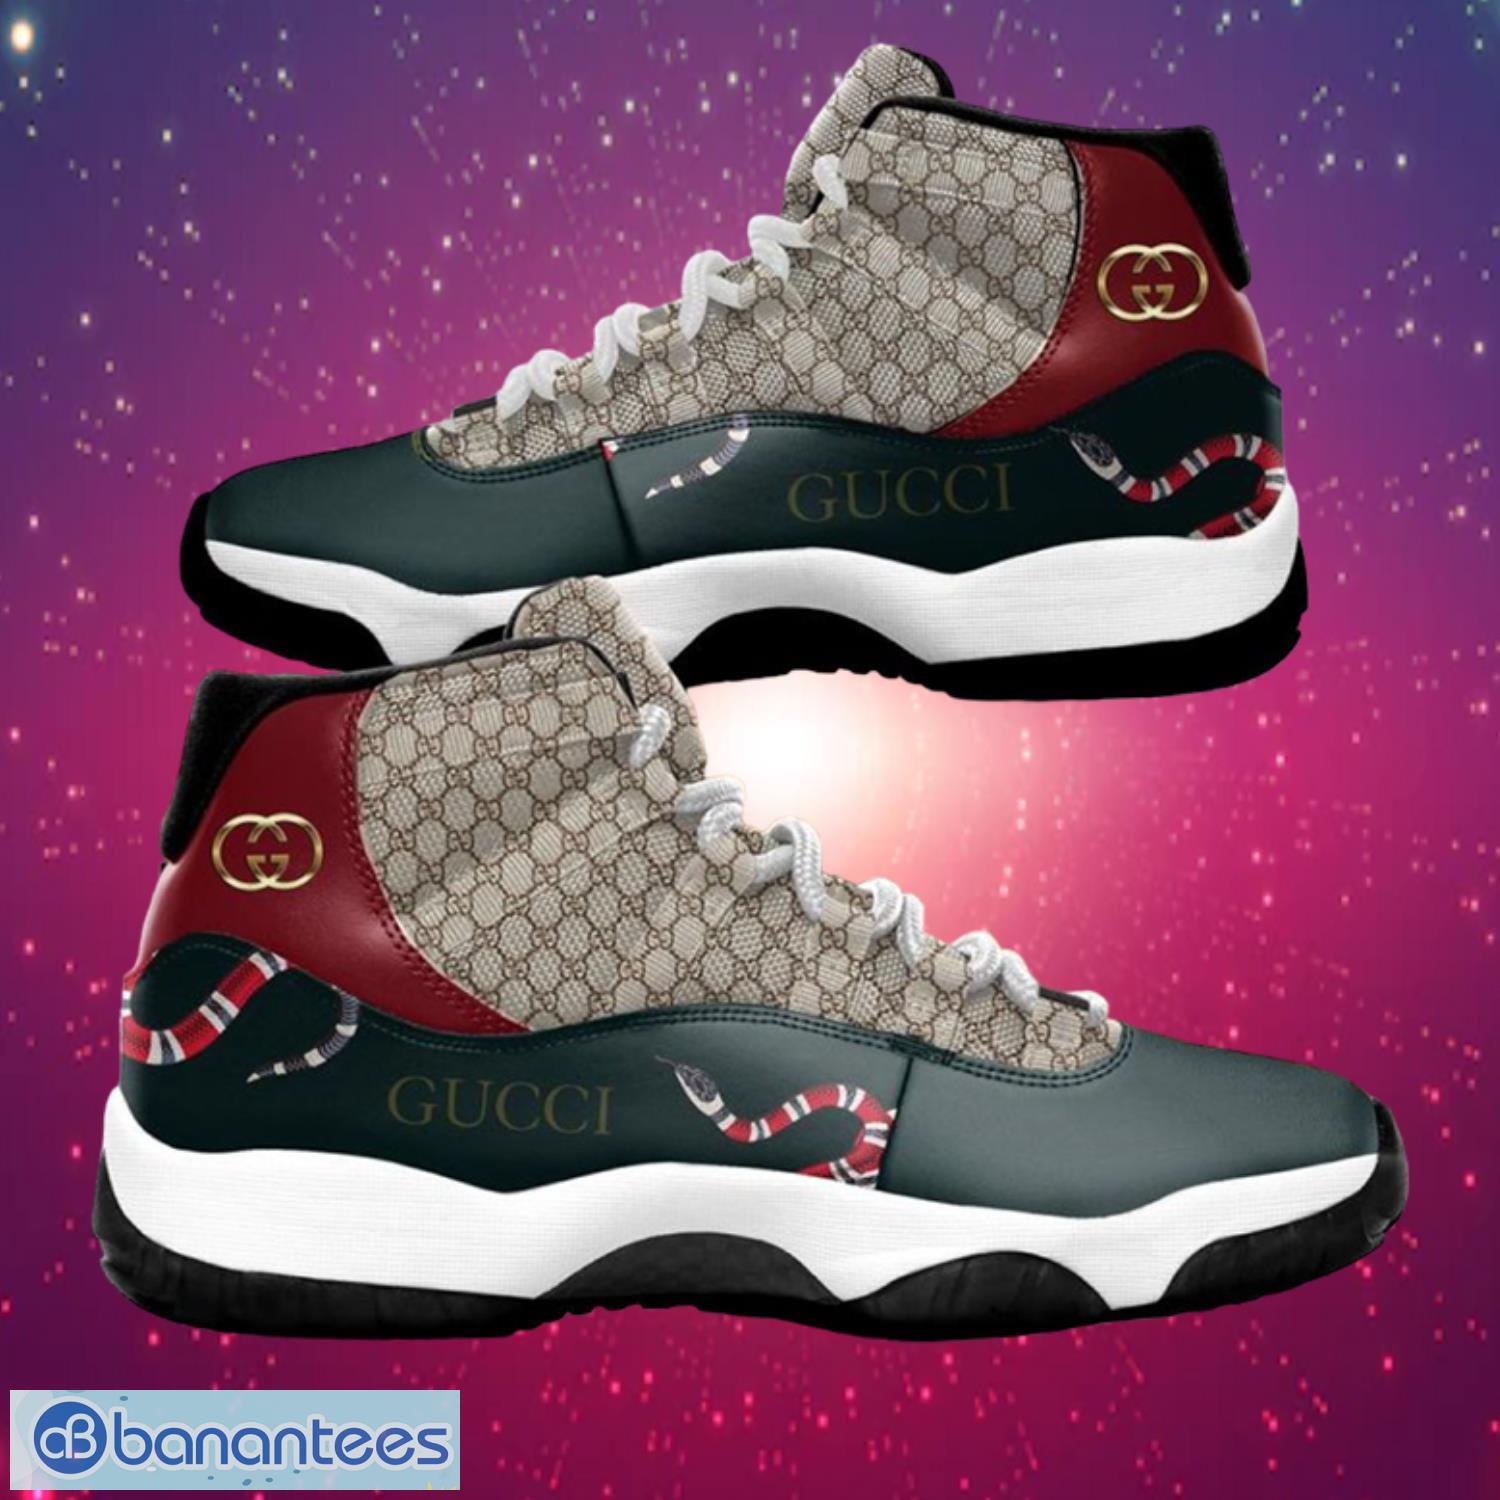 Gucci Coral Jordan 11 Shoes -